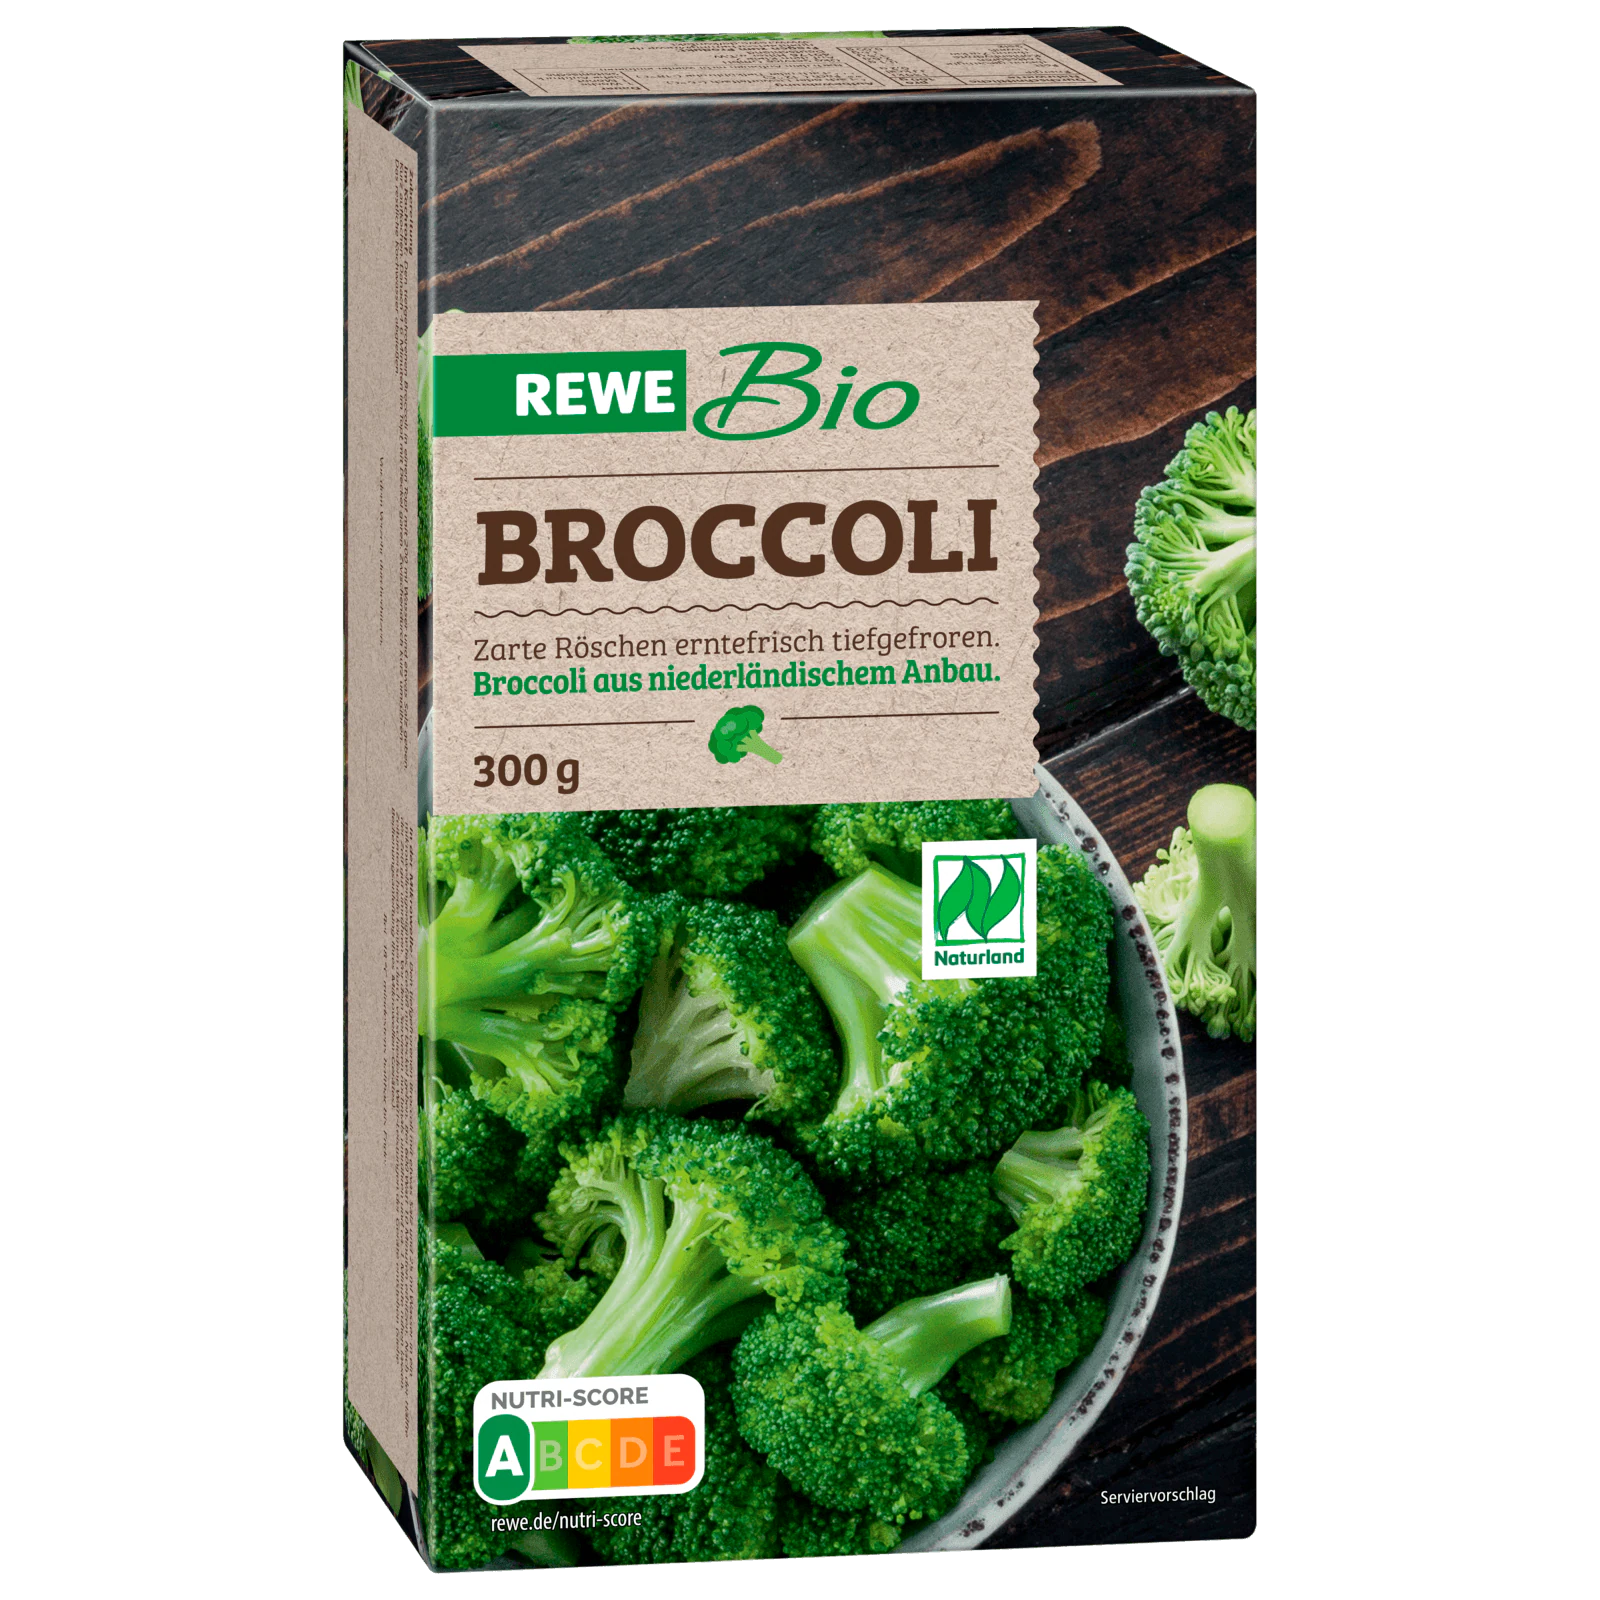 REWE Bio Broccoli tiefgefroren 300g bei REWE online bestellen!